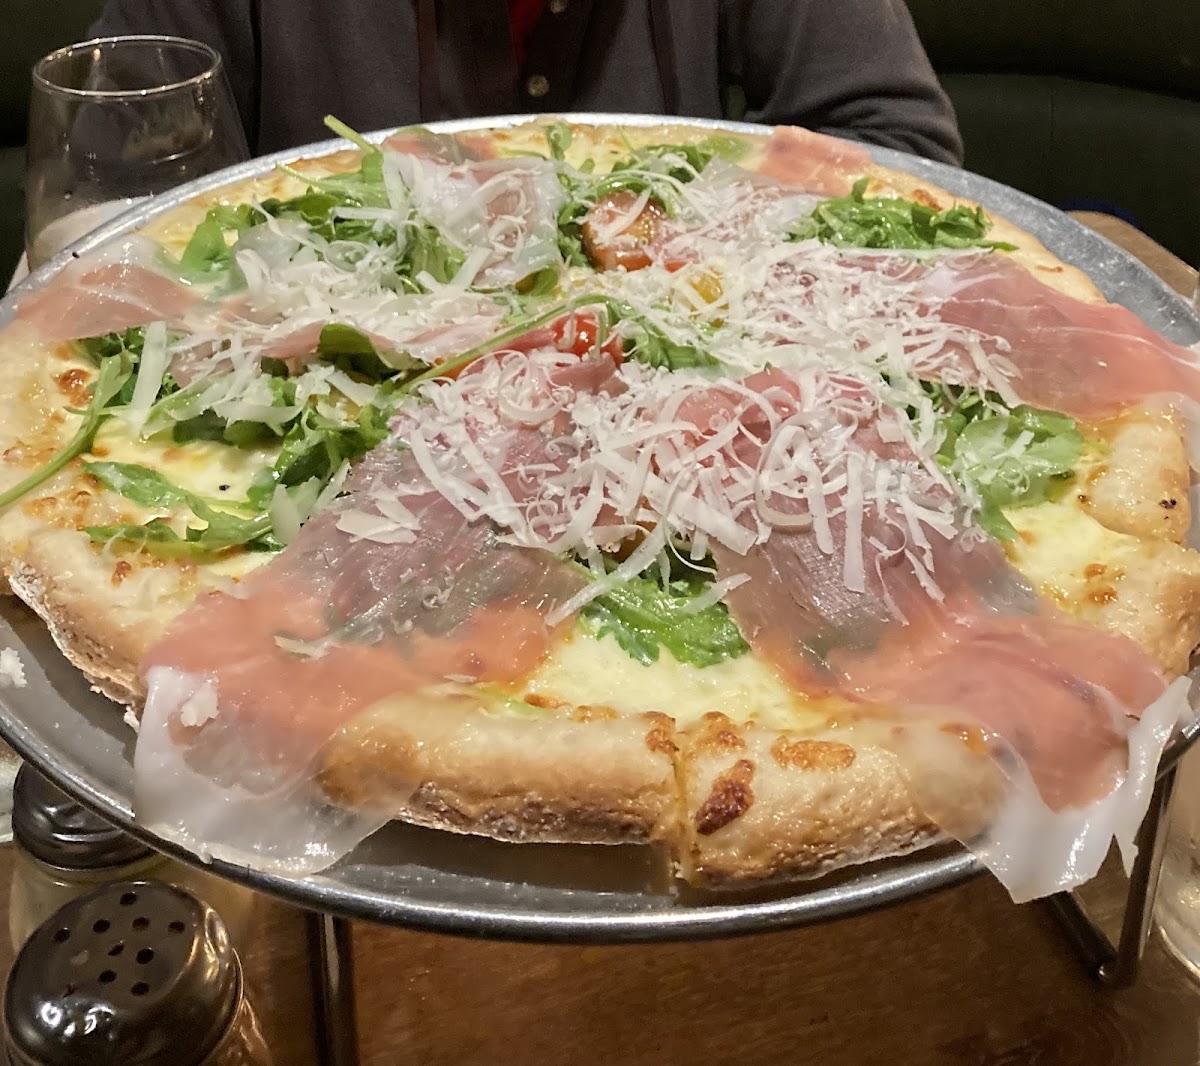 Prosciutto and arugula gf pizza